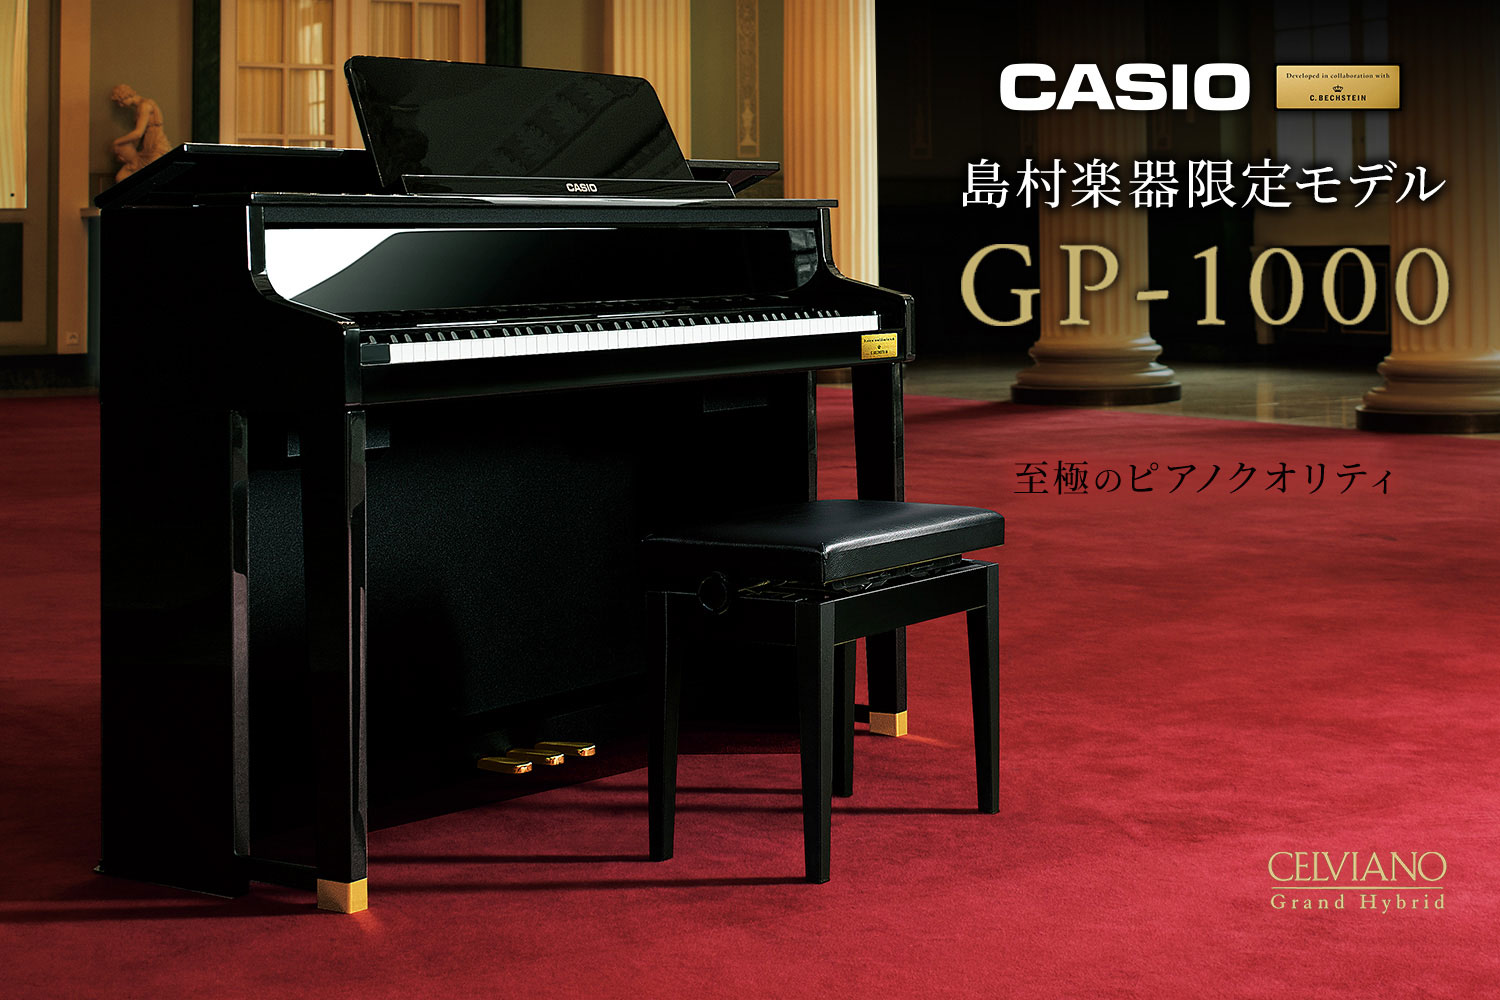 *グランドピアノに徹底的にこだわった至極のクオリティ ピアノ作りの伝統を徹底的に研究、そしてカシオの革新的なデジタル技術を投入した、カシオセルヴィアーノグランドハイブリッドシリーズ。世界有数の歴史あるピアノメーカーであるC.ベヒシュタイン社と共同開発した音や鍵盤を搭載し、2015年の発売以降国内外の […]